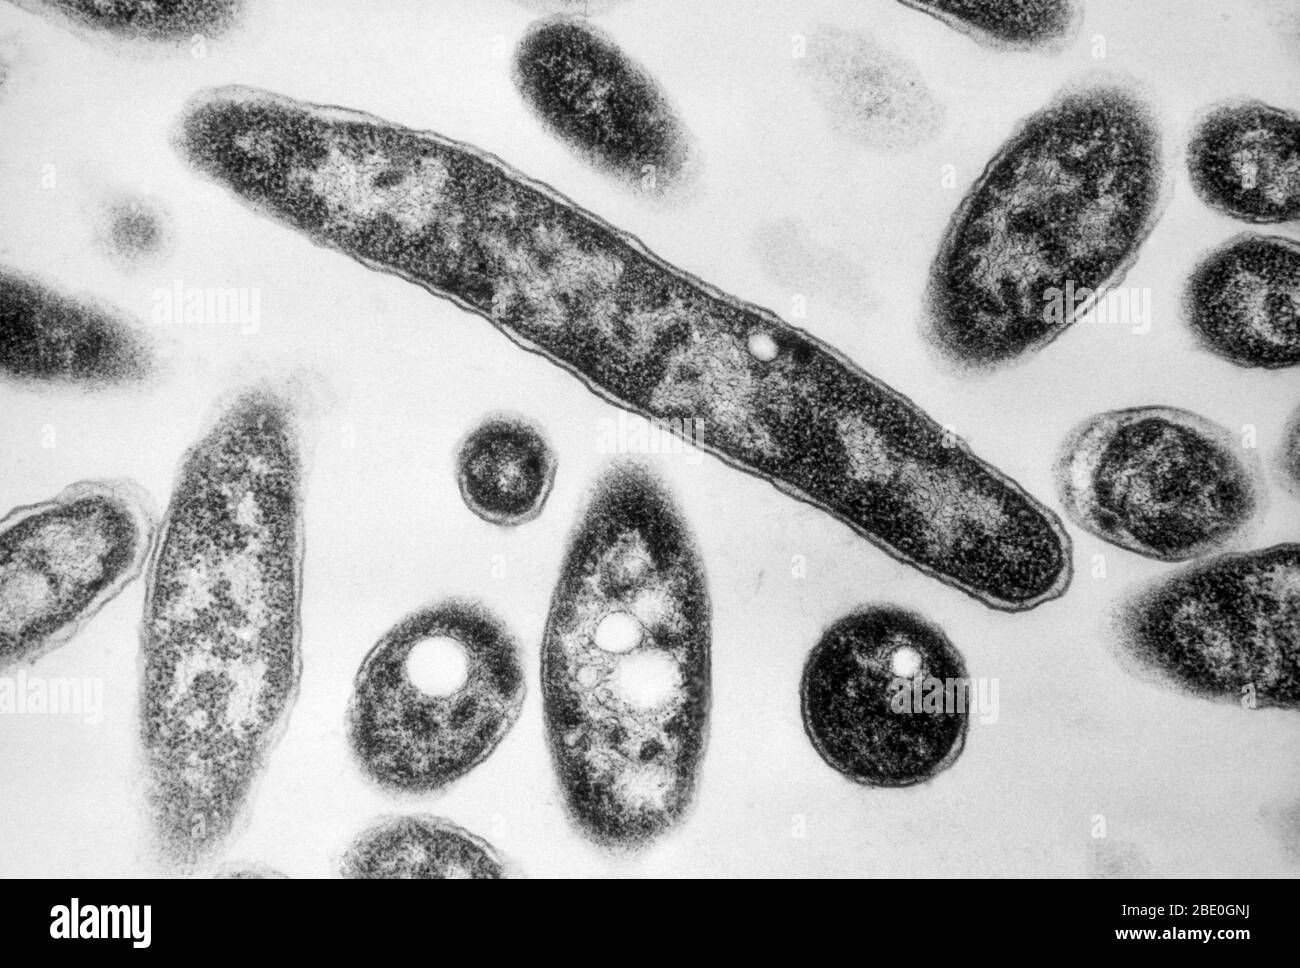 Trasmissione micrografia elettronica (TEM) che mostra batteri nel genere Legionella, con vacuoli visibili. Questi batteri patogeni Gram-negativi causano la legionellosi o la disesasi di Legionnaires. Batteri su terreno batteriologico. Ingrandimento: 90.000 x a 35 mm. Foto Stock